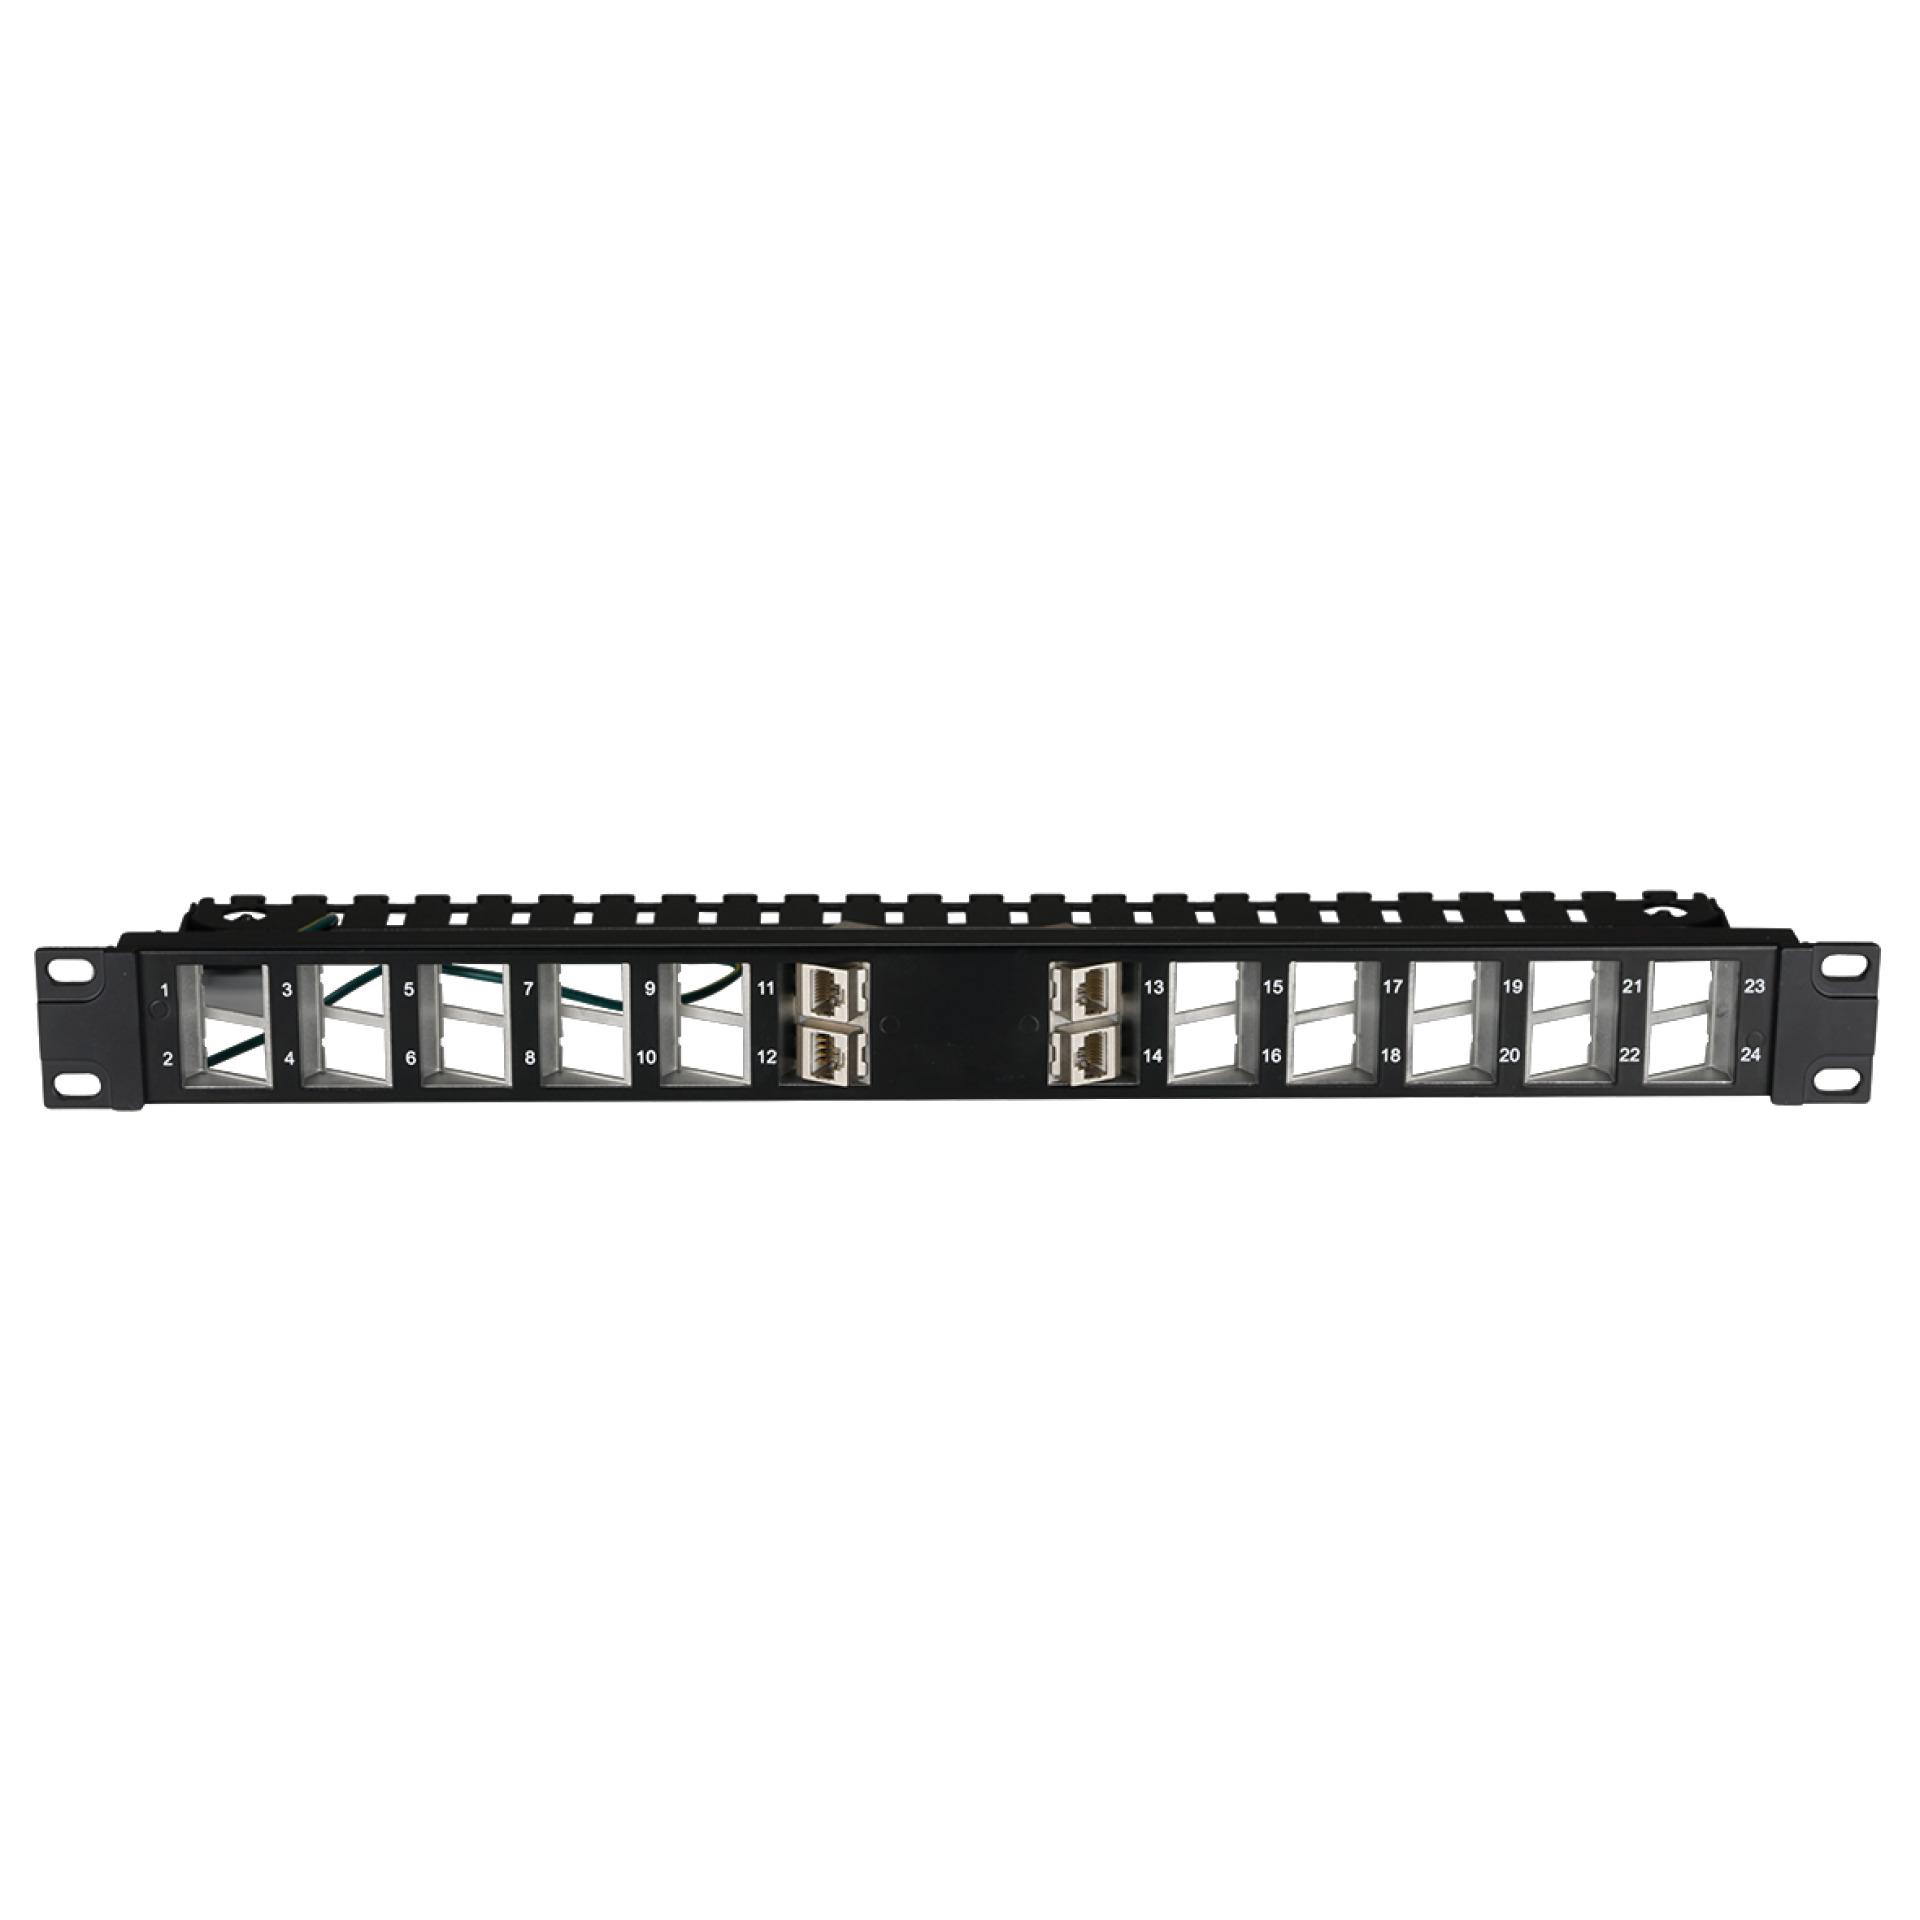 Distribution Panel 19" 1U, 24-Port slanted outlet, black RAL9005